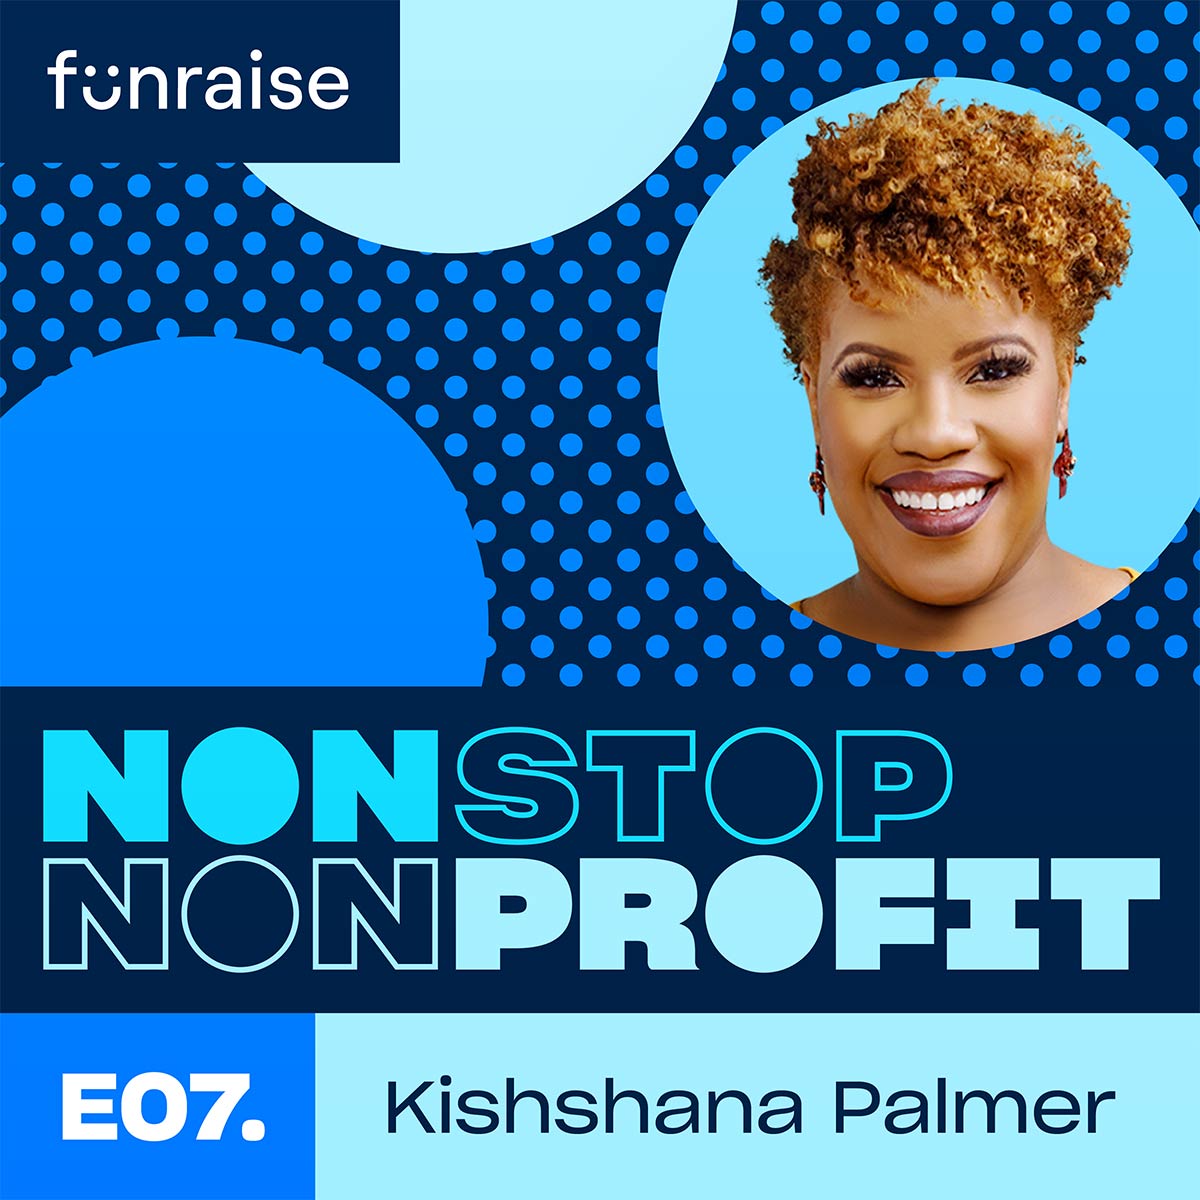 Nonstop Nonprofit Episode 07, Kishshana Palmer